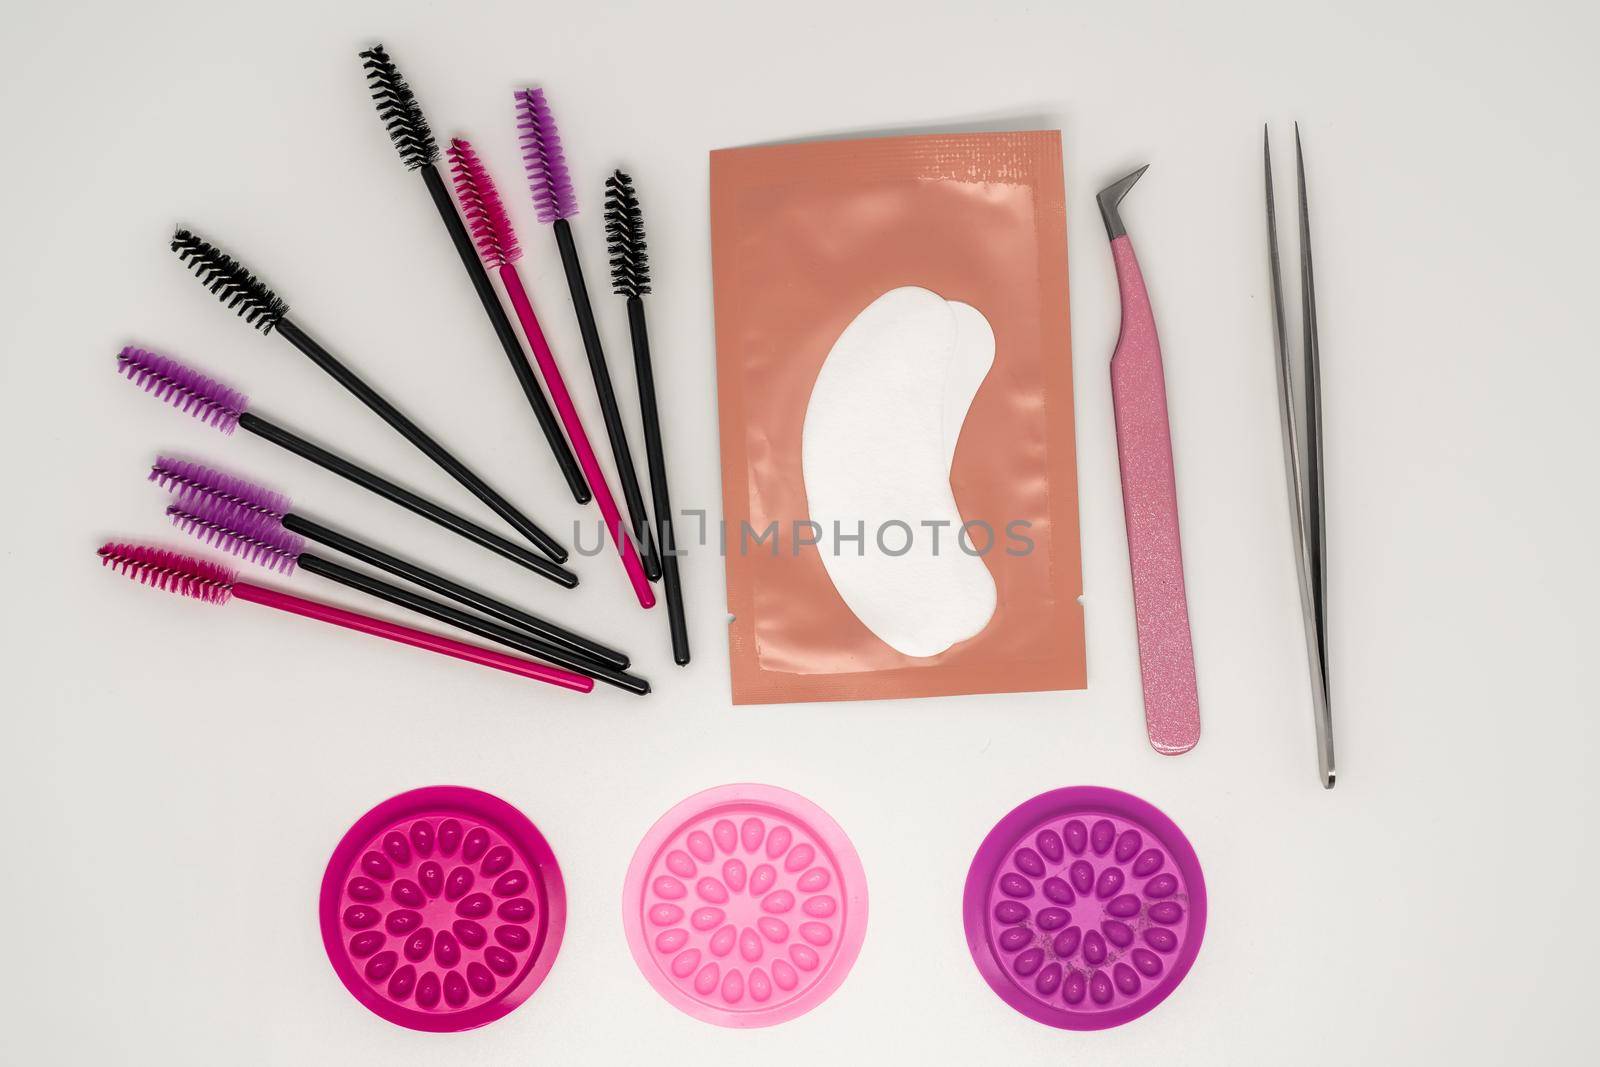 Eyelash extension tools, eyelash combs and eyelashes on a white background